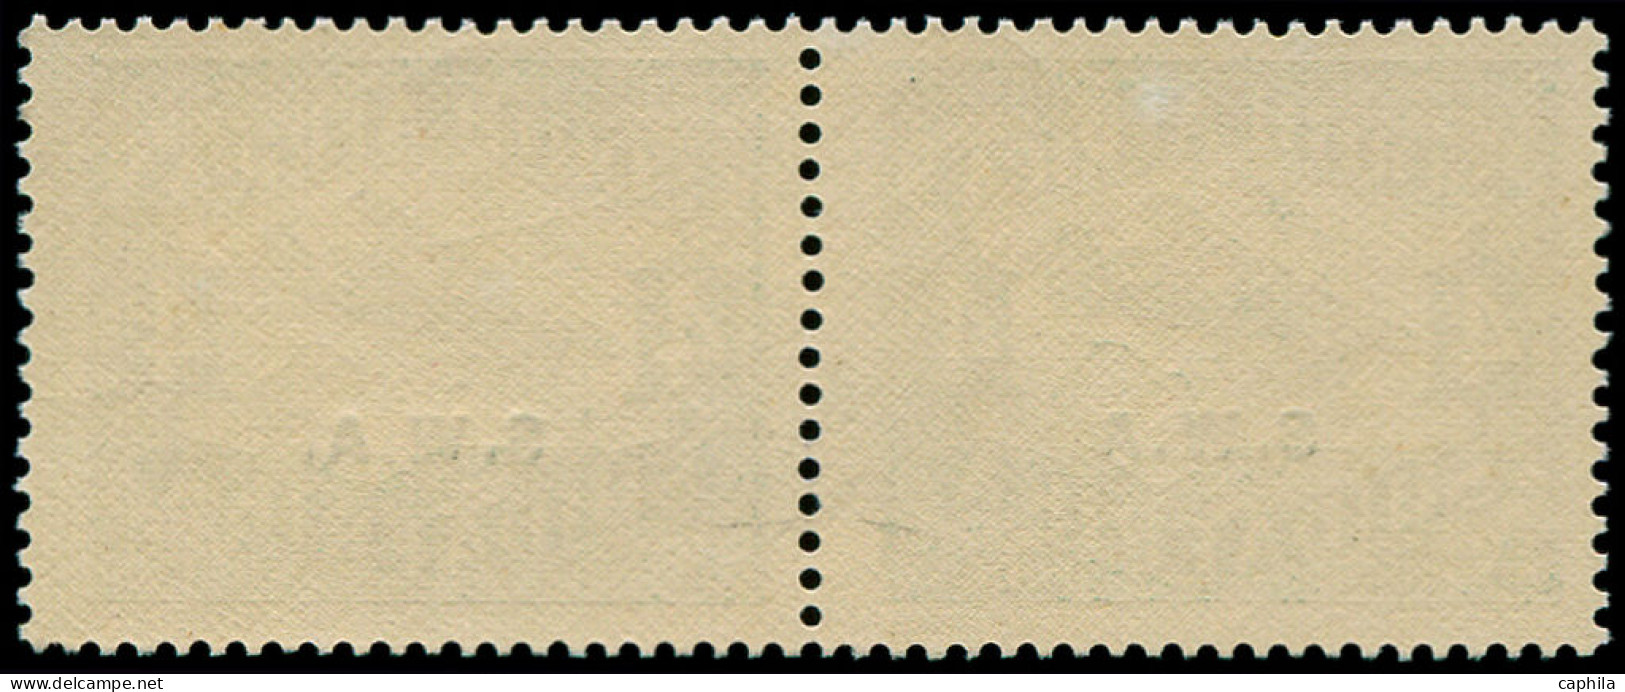 SUD OUEST AFRICAIN Poste Aérienne * - 1, Paire Horizontale, 1er Tirage, 1 Exemplaire Sans Point (Michel 136 I/I) - Afrique Du Sud-Ouest (1923-1990)